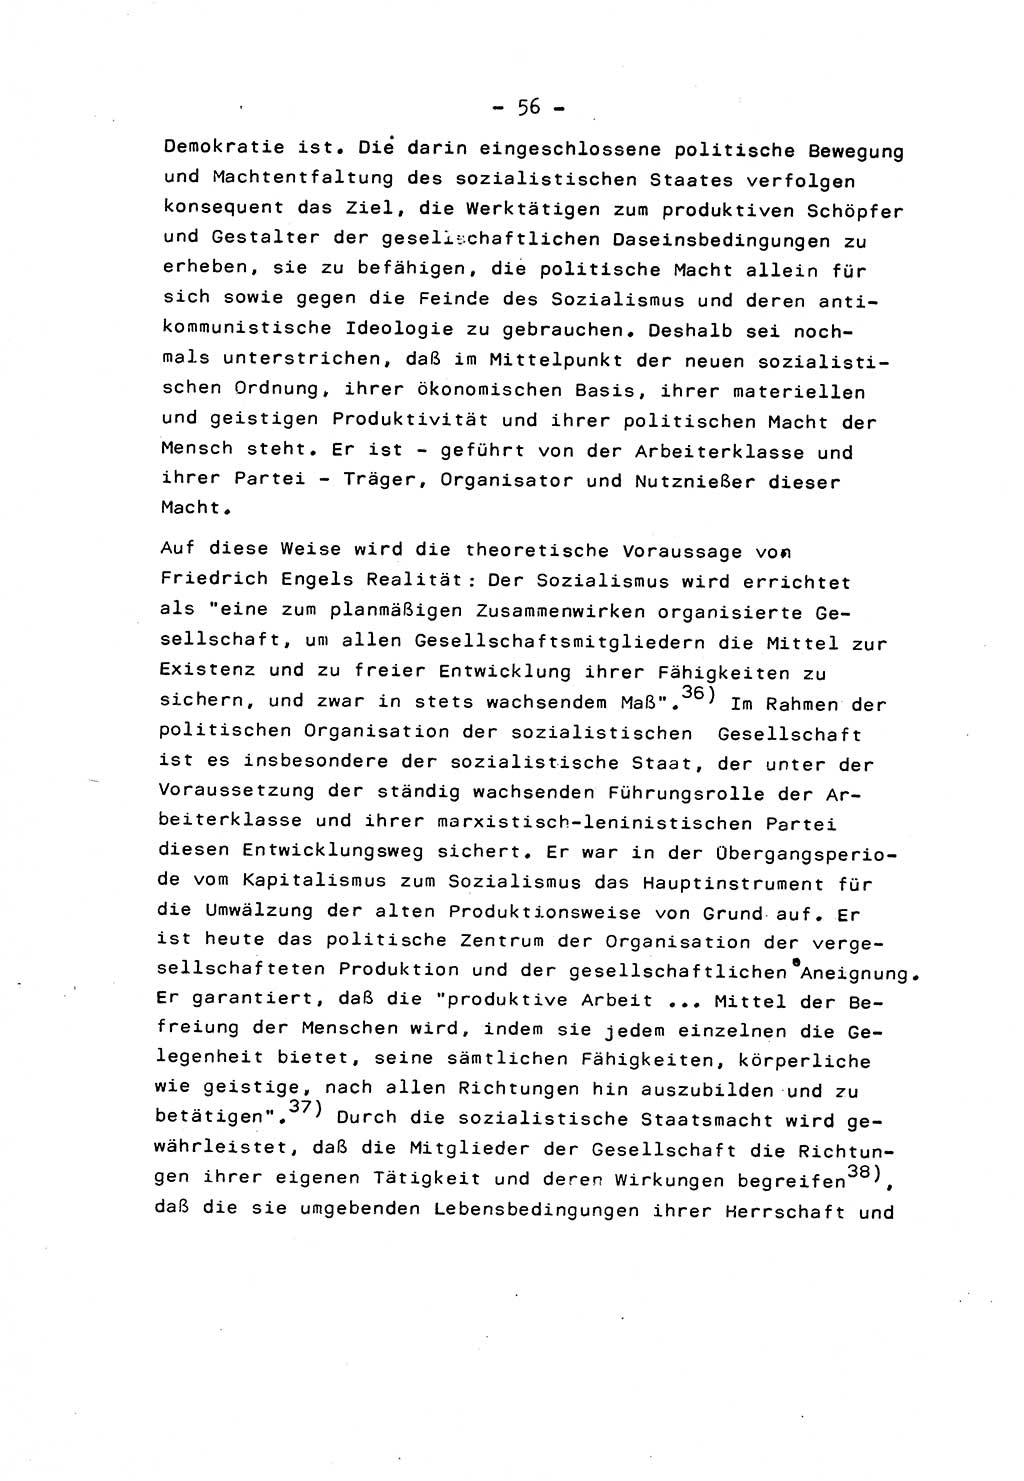 Marxistisch-leninistische Staats- und Rechtstheorie [Deutsche Demokratische Republik (DDR)] 1975, Seite 56 (ML St.-R.-Th. DDR 1975, S. 56)